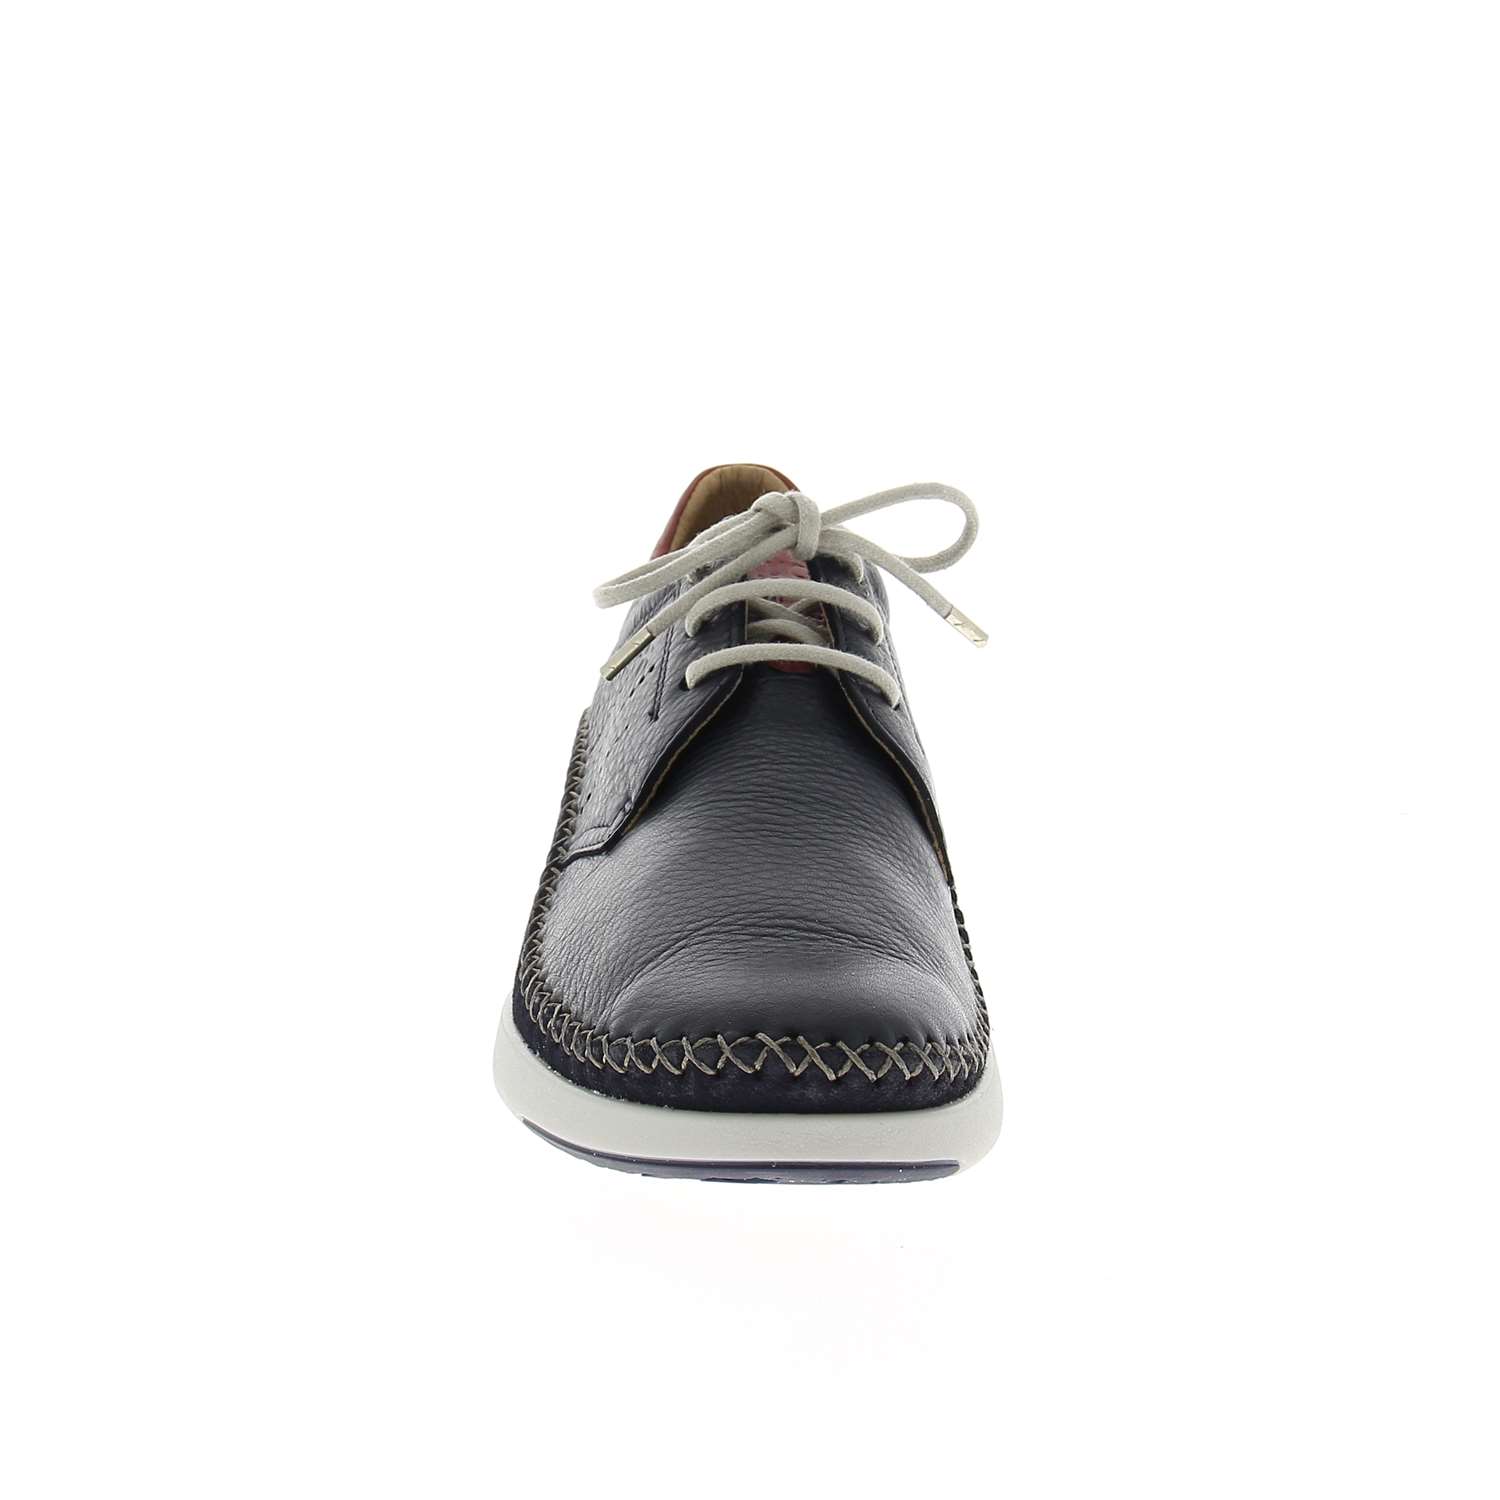 03 - FLUTAN - FLUCHOS - Chaussures à lacets - Cuir